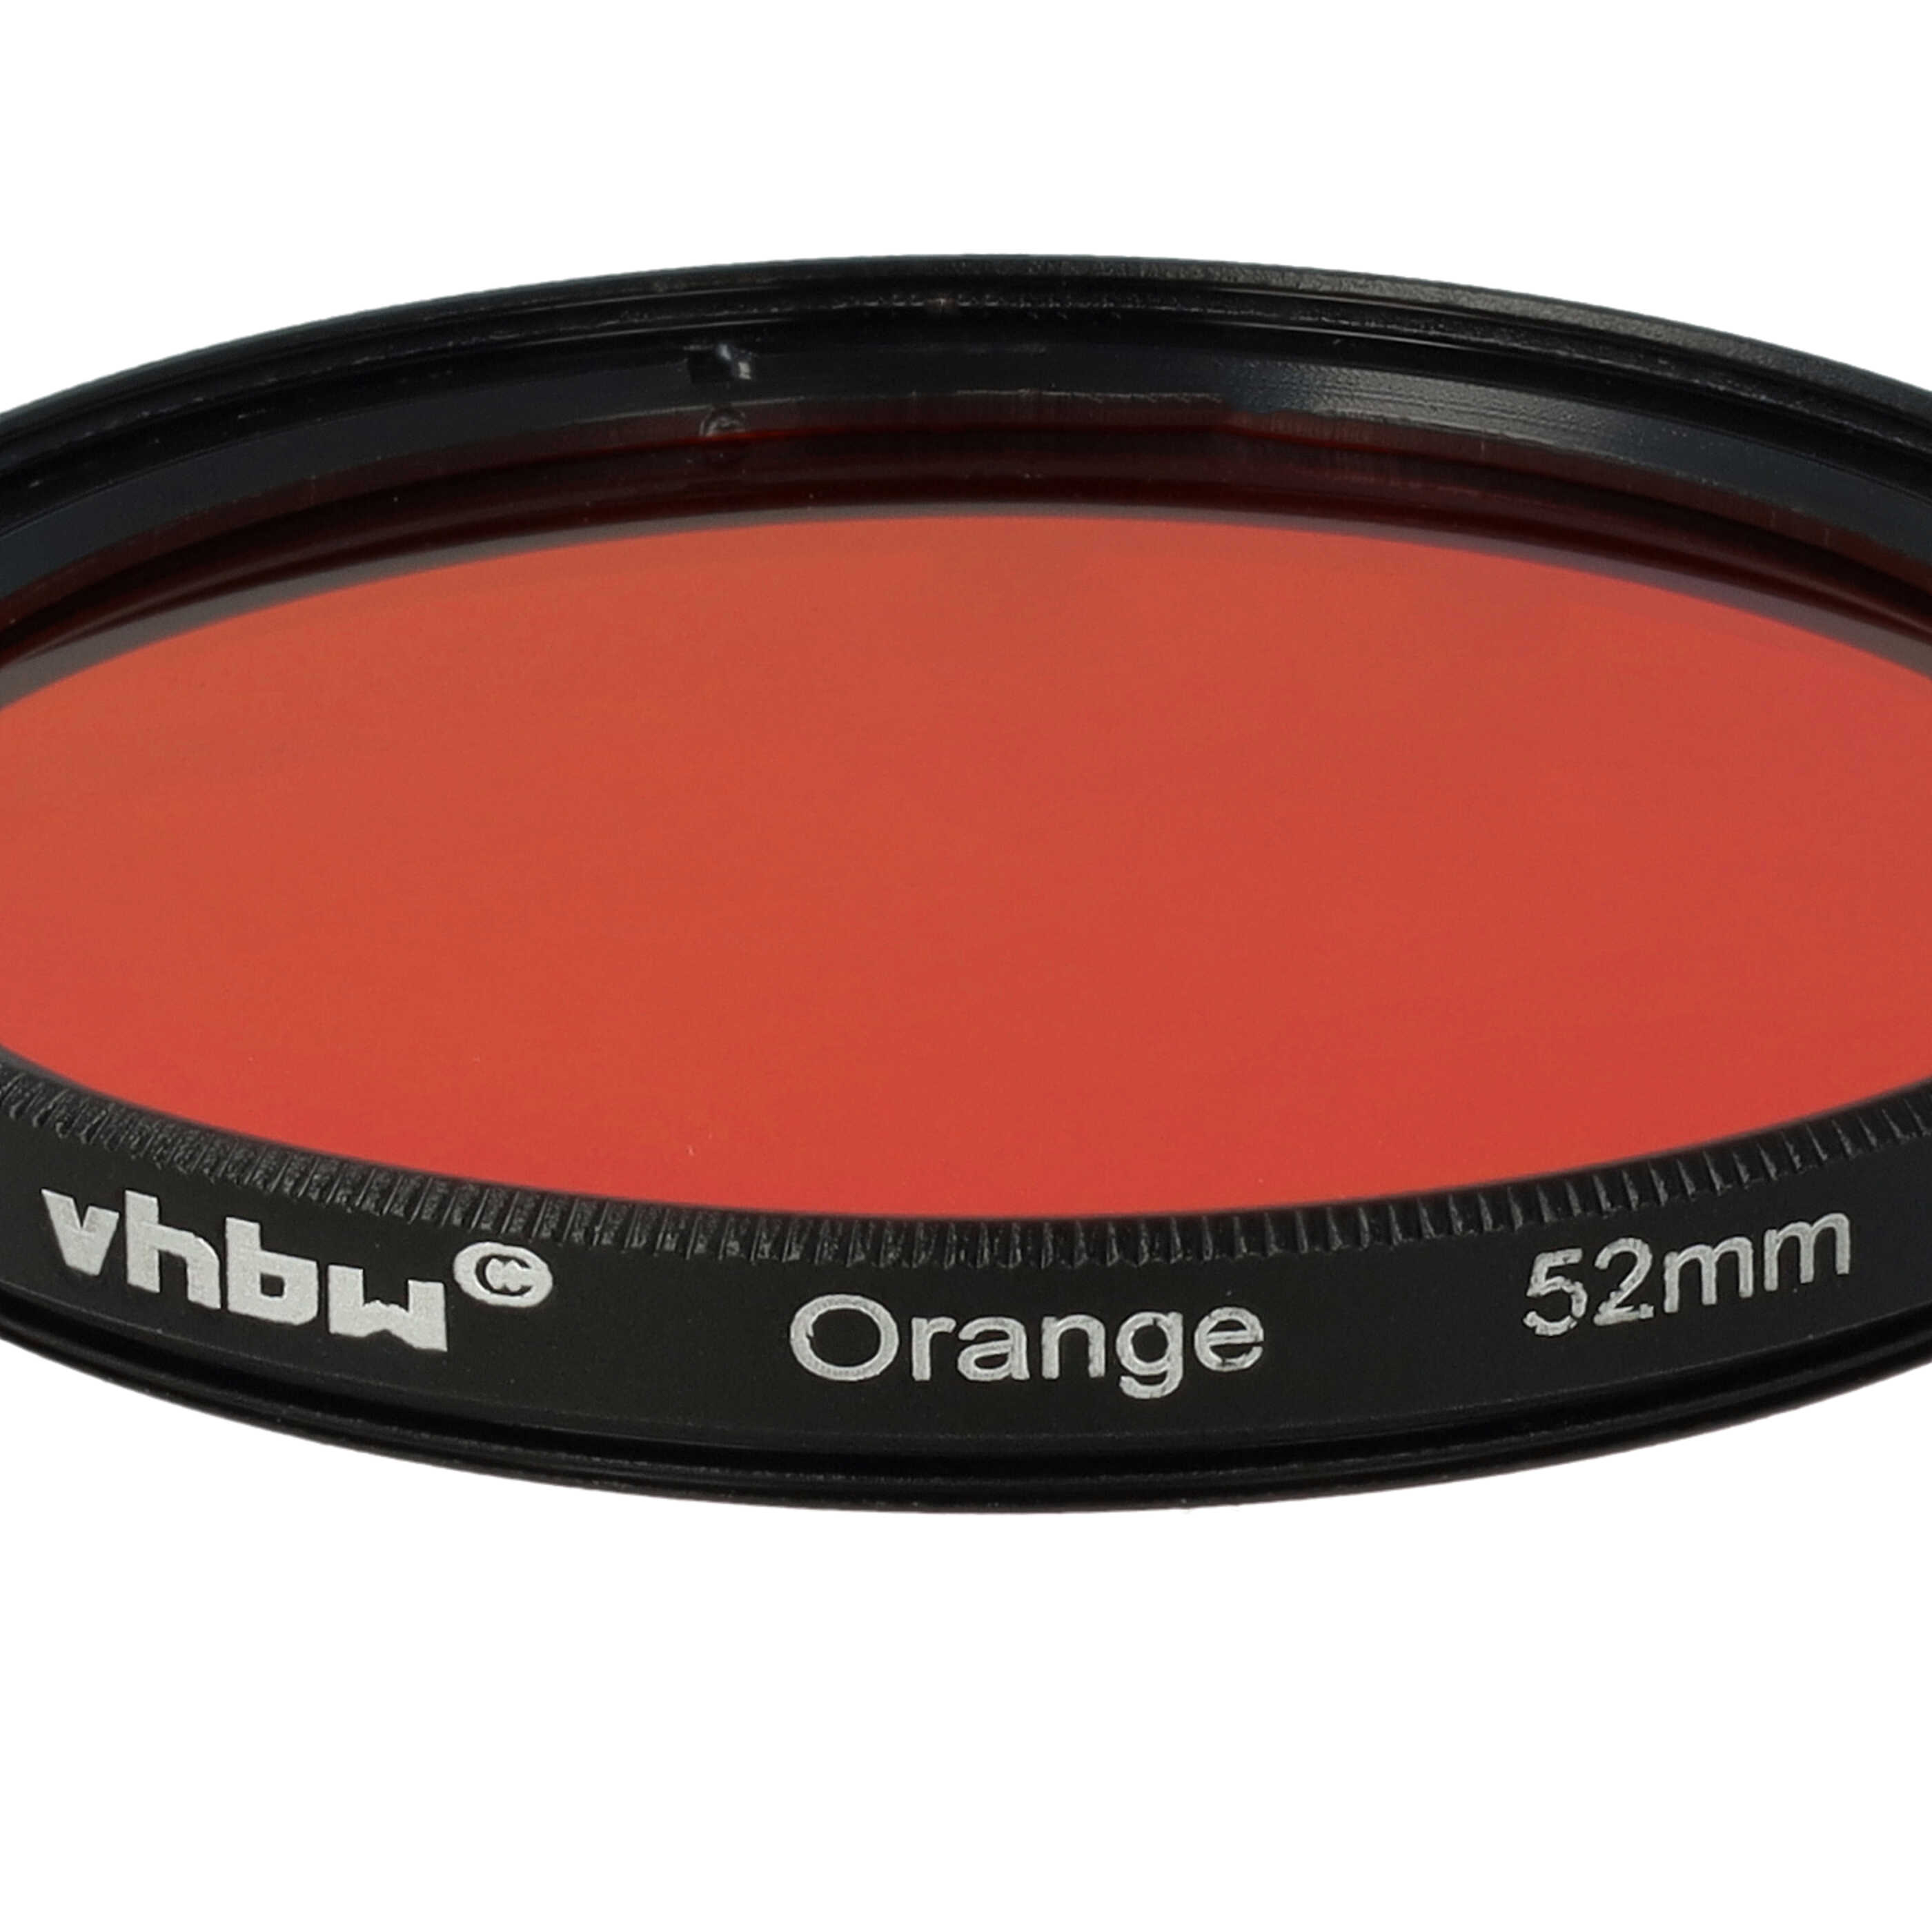 Filtro colorato per obiettivi fotocamera con filettatura da 52 mm - filtro arancione